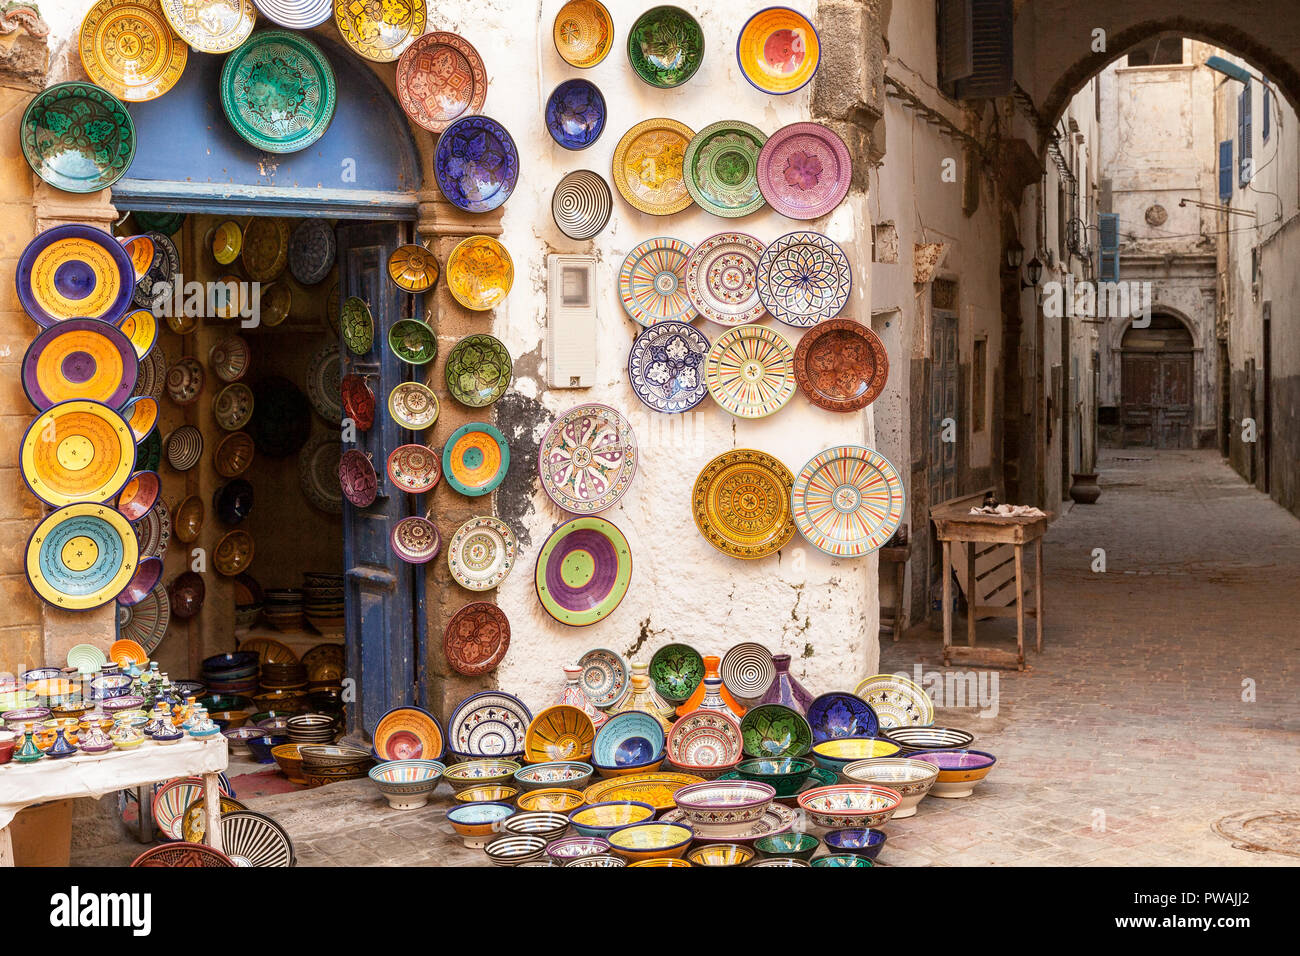 Marokko Essaouira farbenfrohe Keramik und Töpferei angezeigt, für den Verkauf außerhalb ein Geschäft in einer Fußgängerzone Gasse. Bunt und stimmungsvoll. Stockfoto